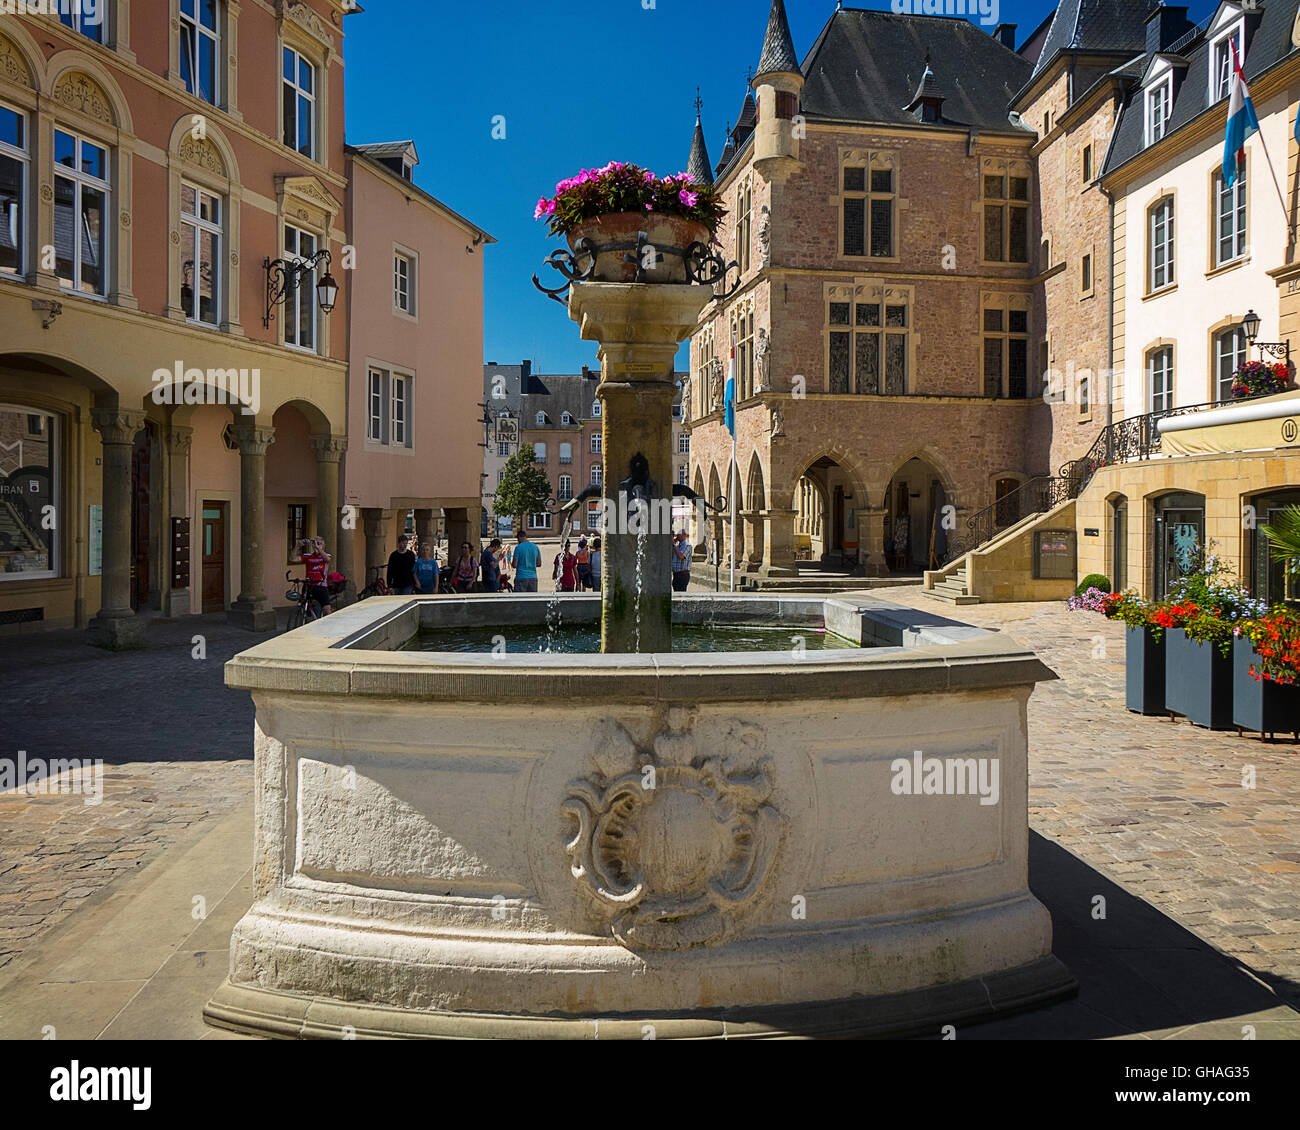 LUX - MULLERTHAL REGION: Place de Marche and gothic Hotel de Ville at Echternach Stock Photo